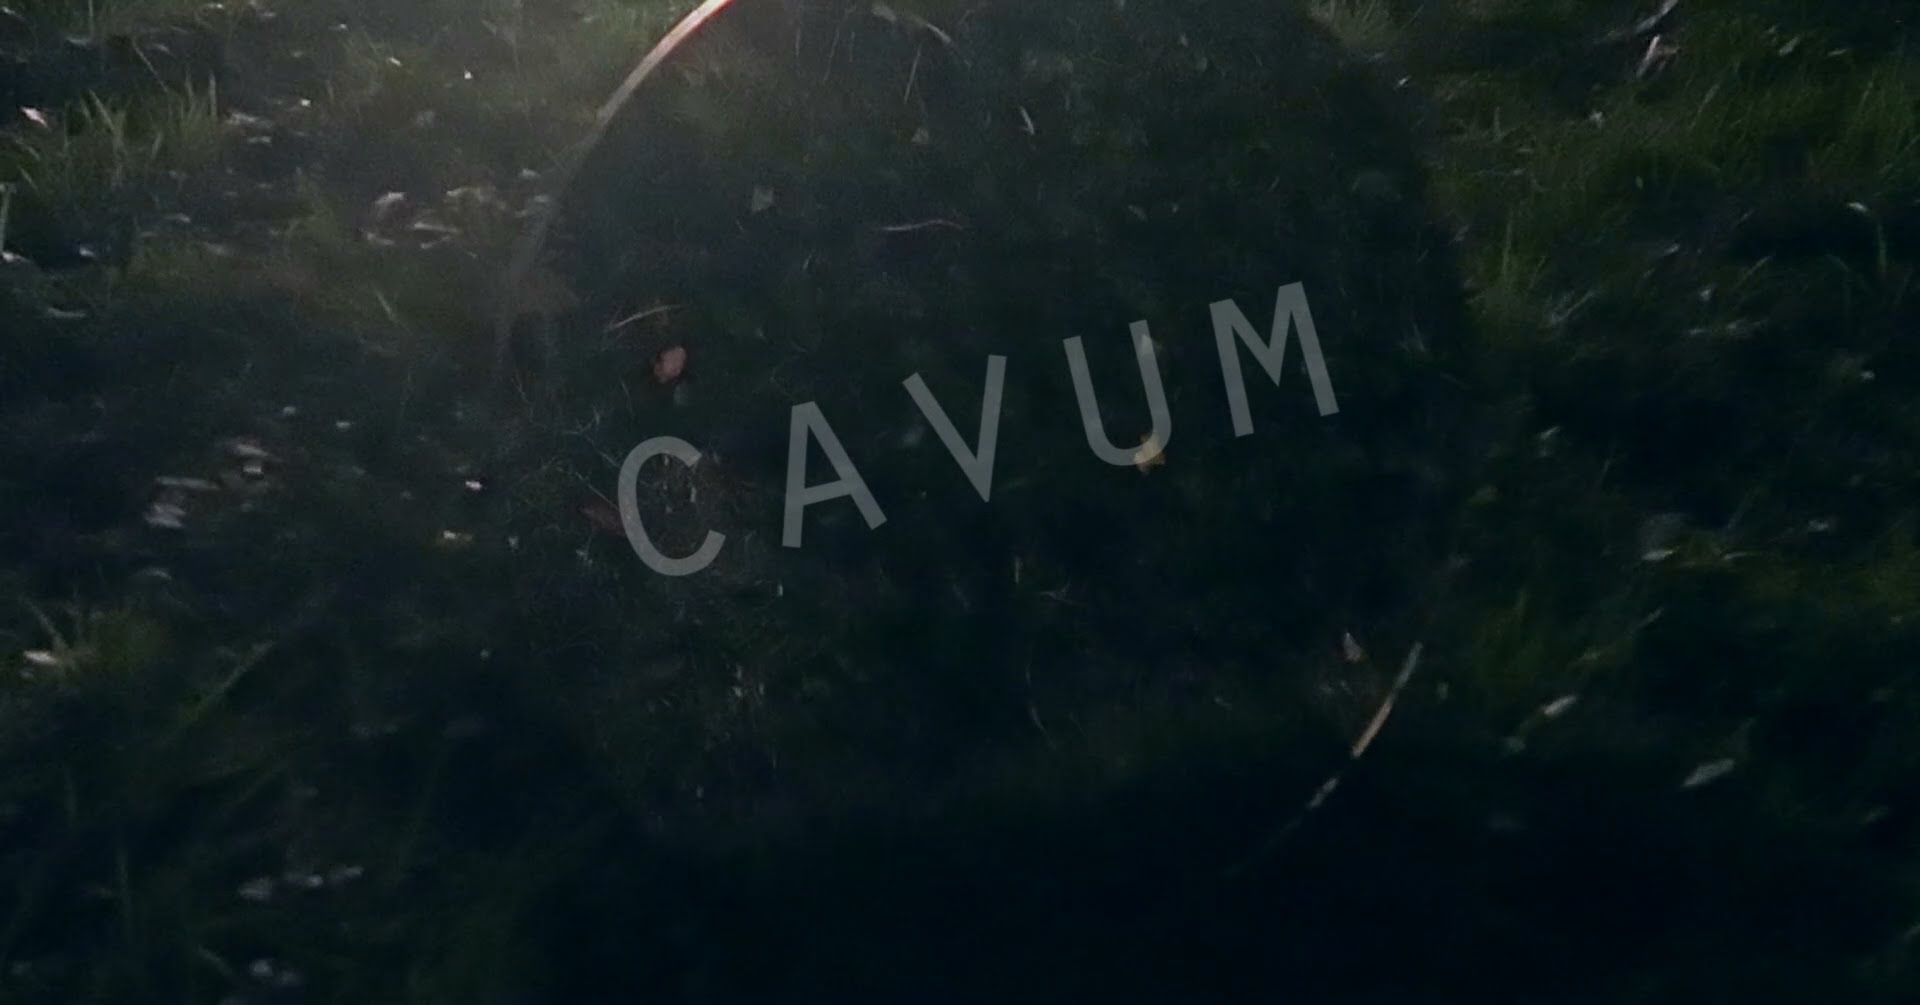 Cavum